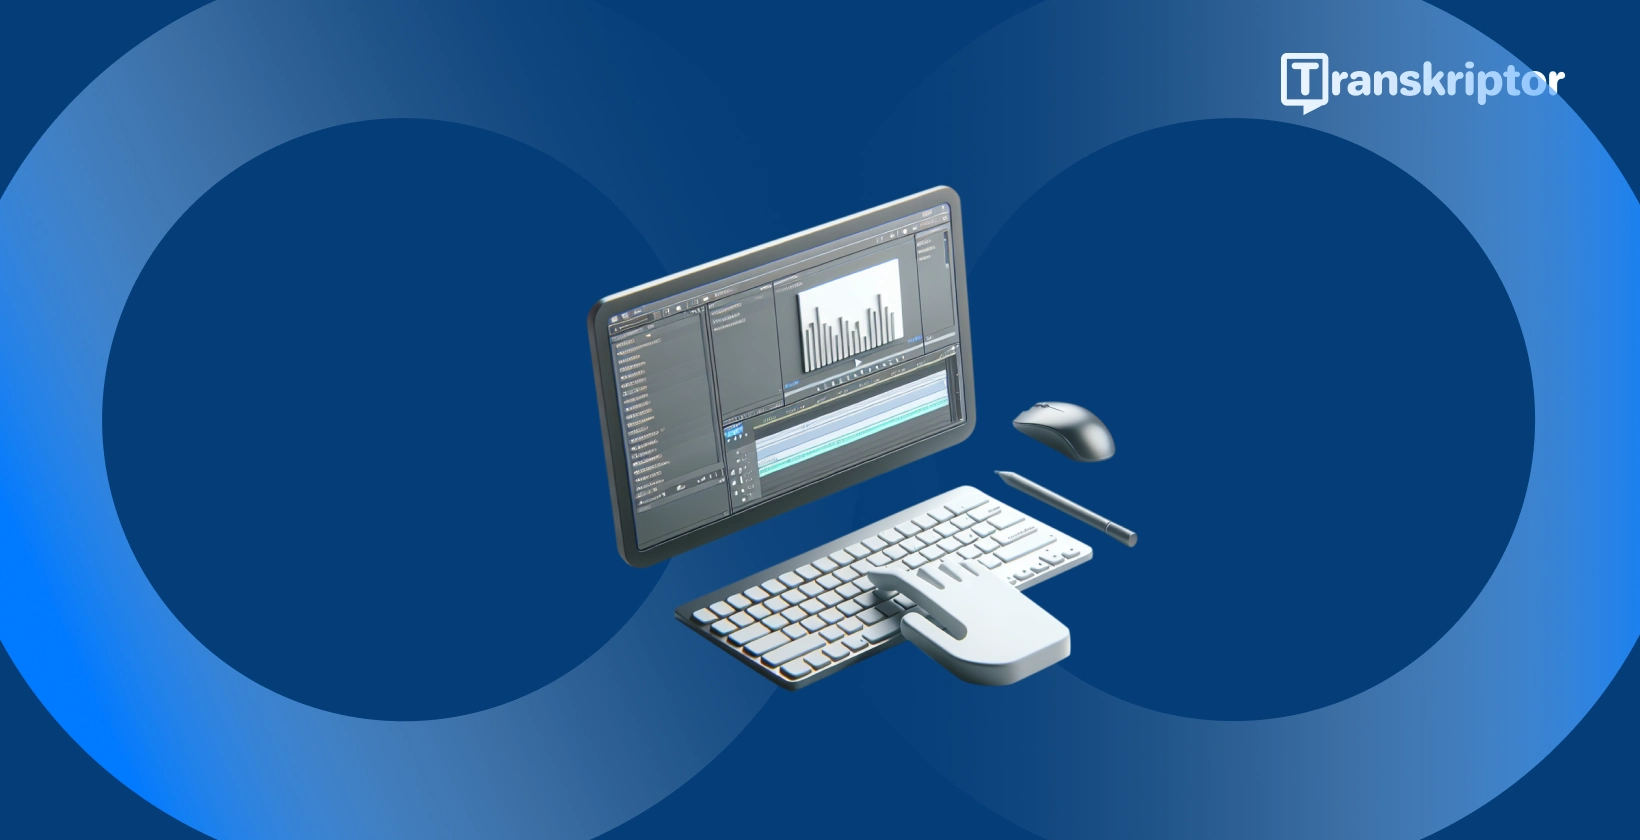 Shotcut perangkat lunak pengeditan video pada monitor dengan bentuk gelombang dan alat teks, untuk menambahkan teks dan judul ke video.